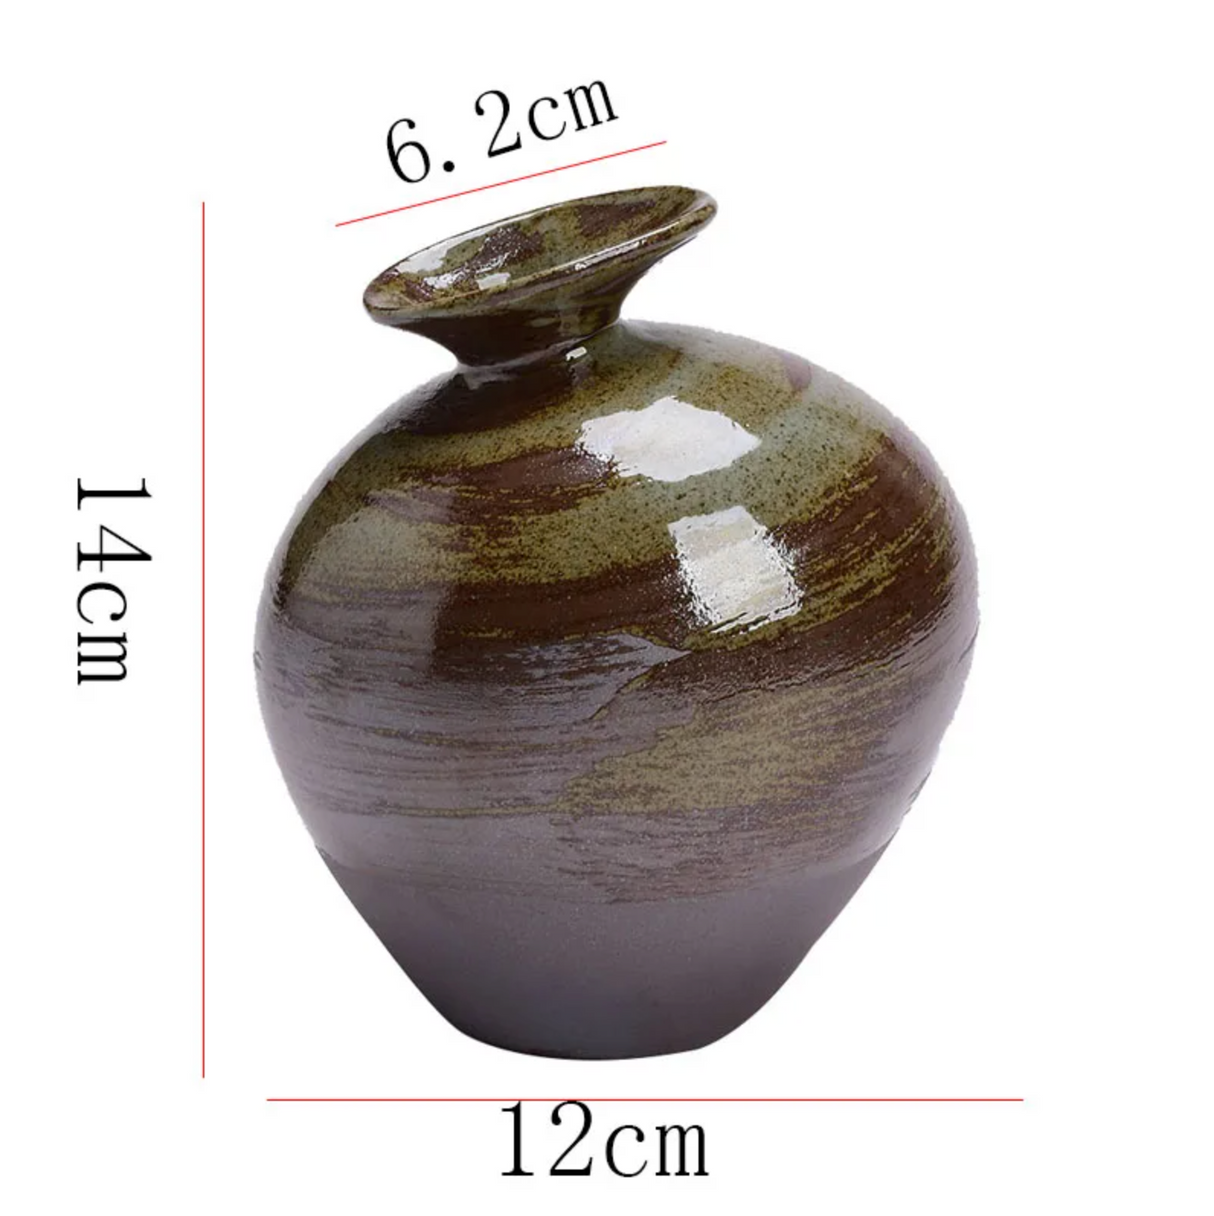 Old style Japanese ceramic vase